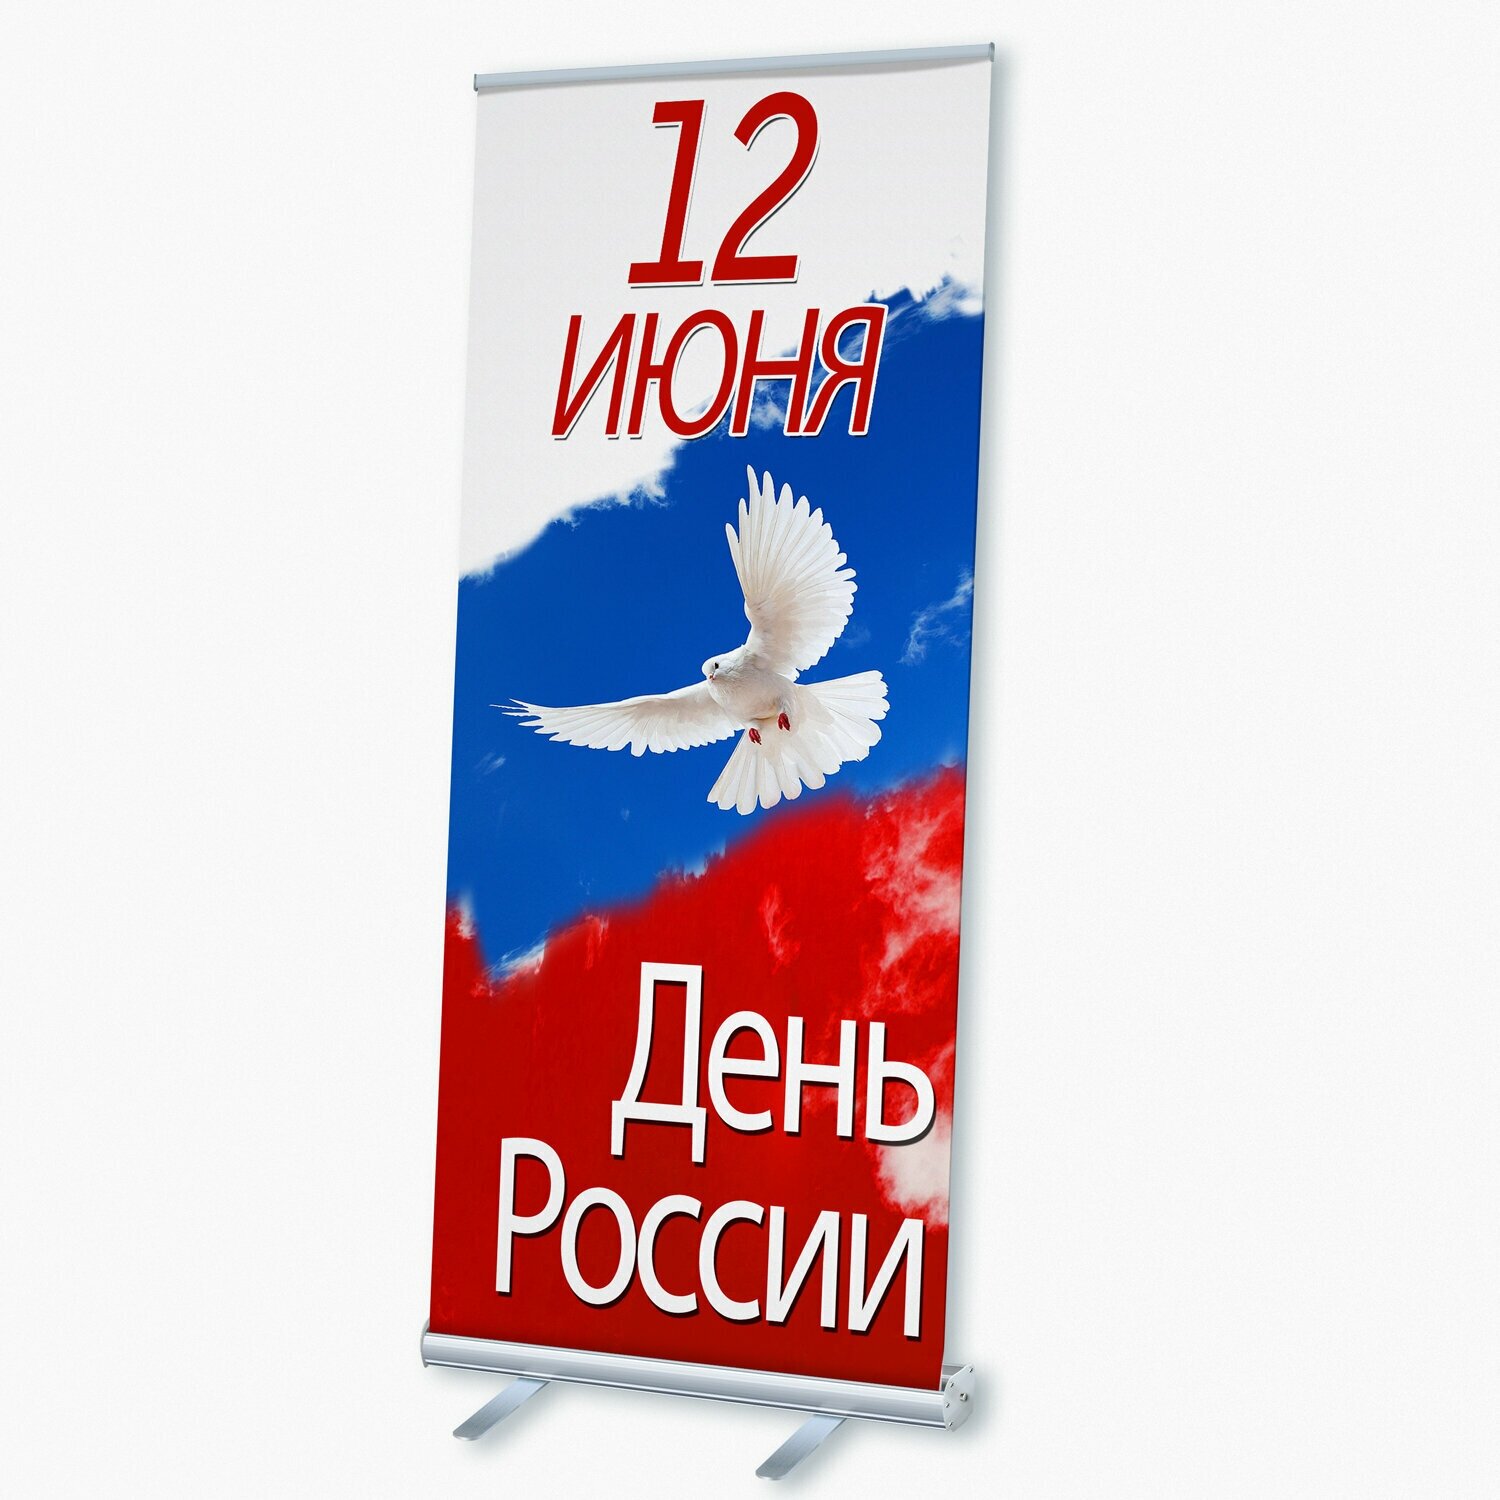 Мобильный cтенд Ролл Ап (Roll Up) с печатью баннера на День России / 85x200 см.